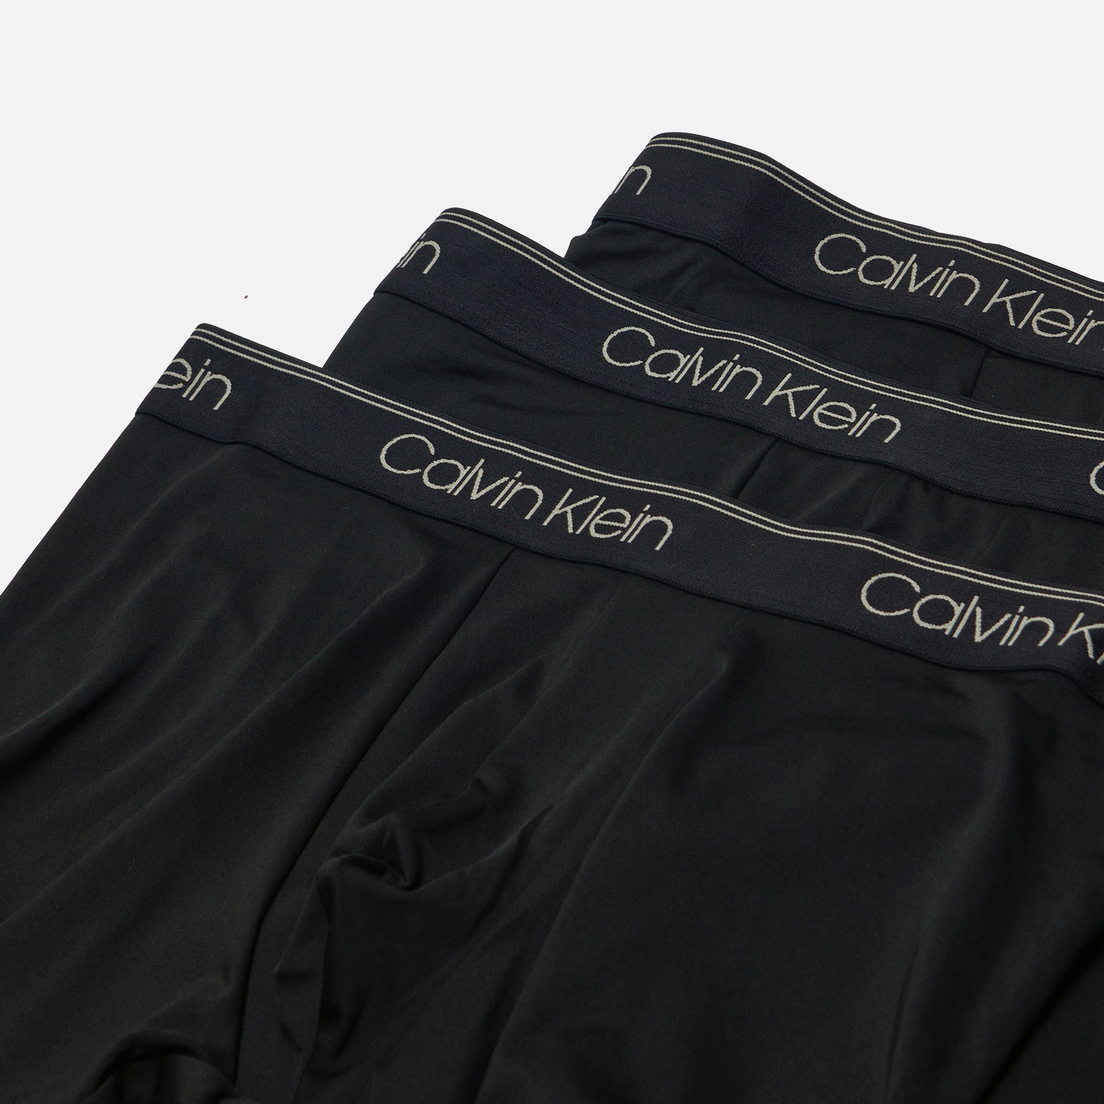 Calvin Klein Underwear Комплект мужских трусов 3-Pack Boxer Brief Micro Stretch Wicking